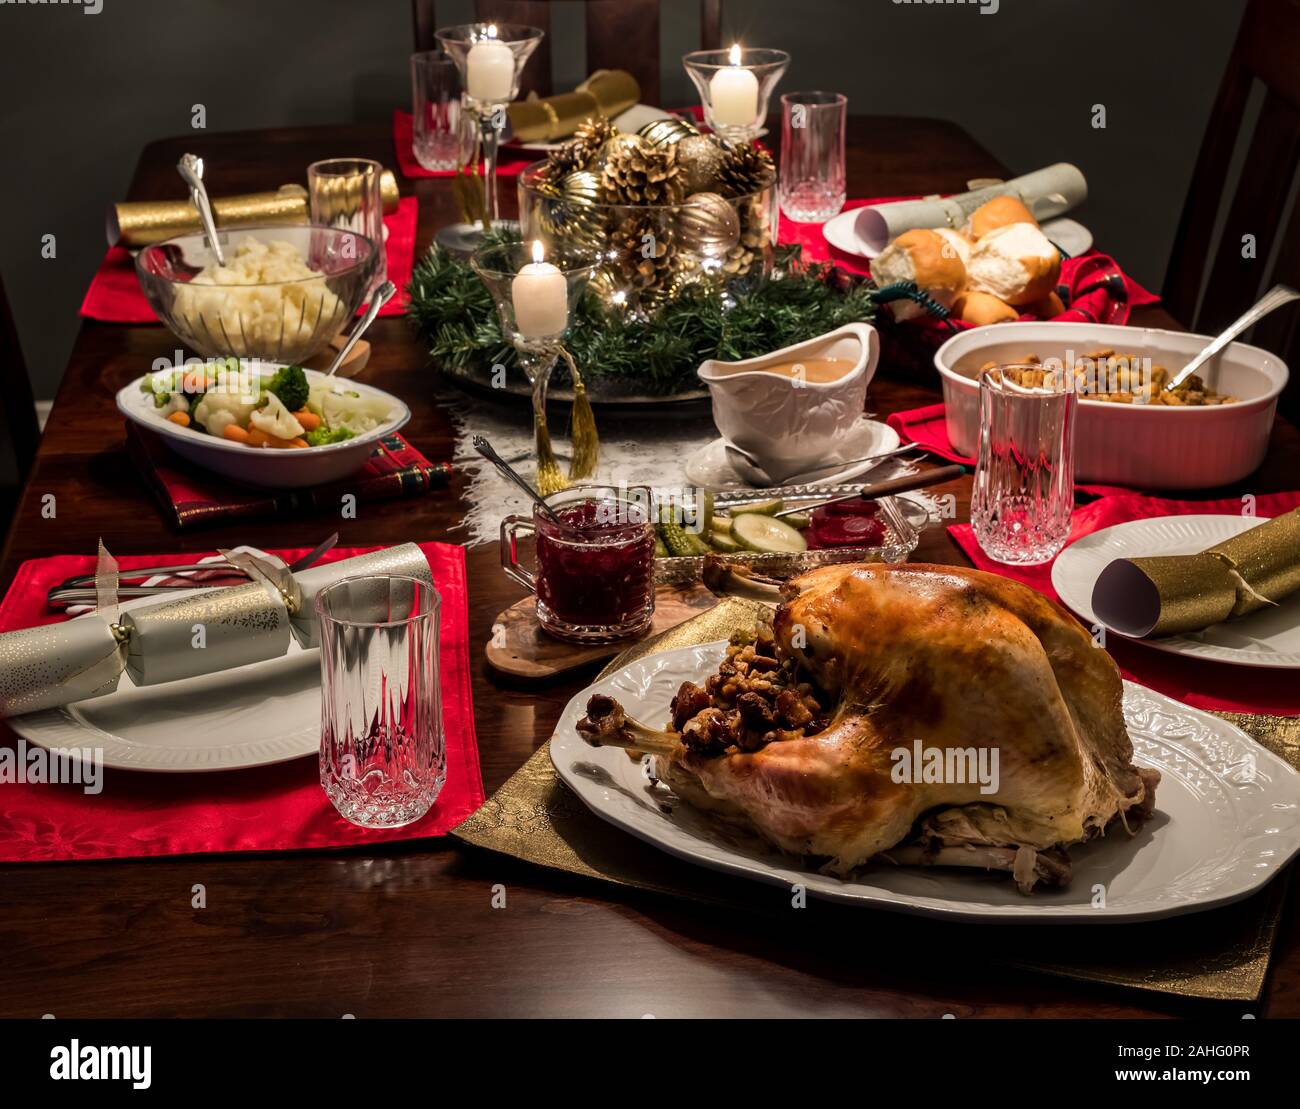 Gros plan d'une table de dîner de Noël avec la Turquie et tous les accompagnements y compris la sauce et sauce aux canneberges. Banque D'Images